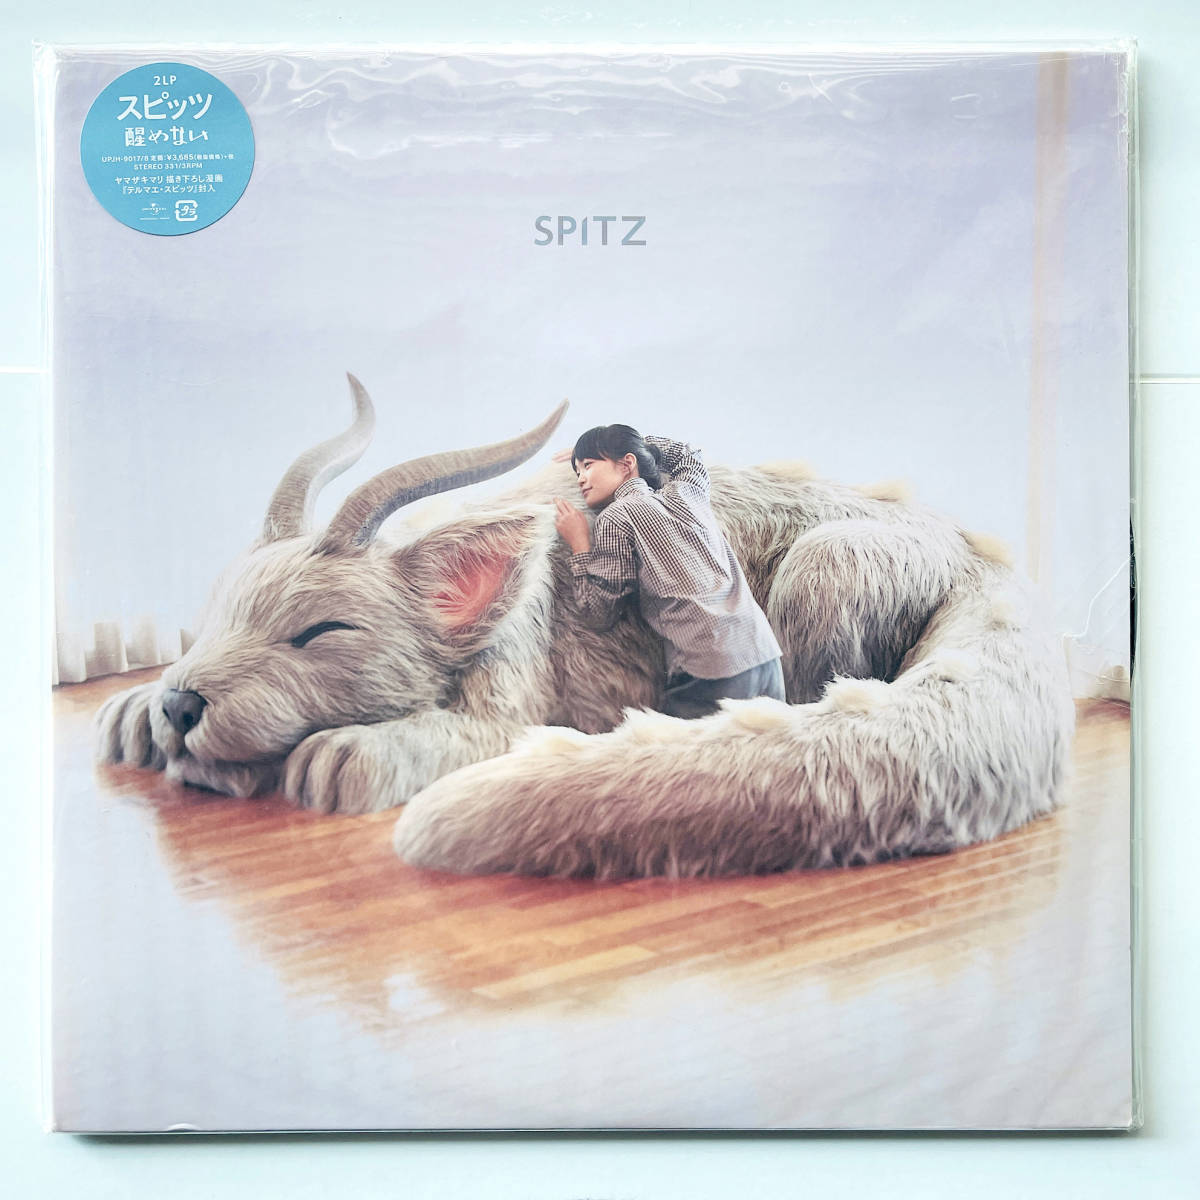 30周年記念限定盤 レコード2枚組〔 スピッツ - 醒めない 〕Spitz 30th Anniversary / 草野マサムネ